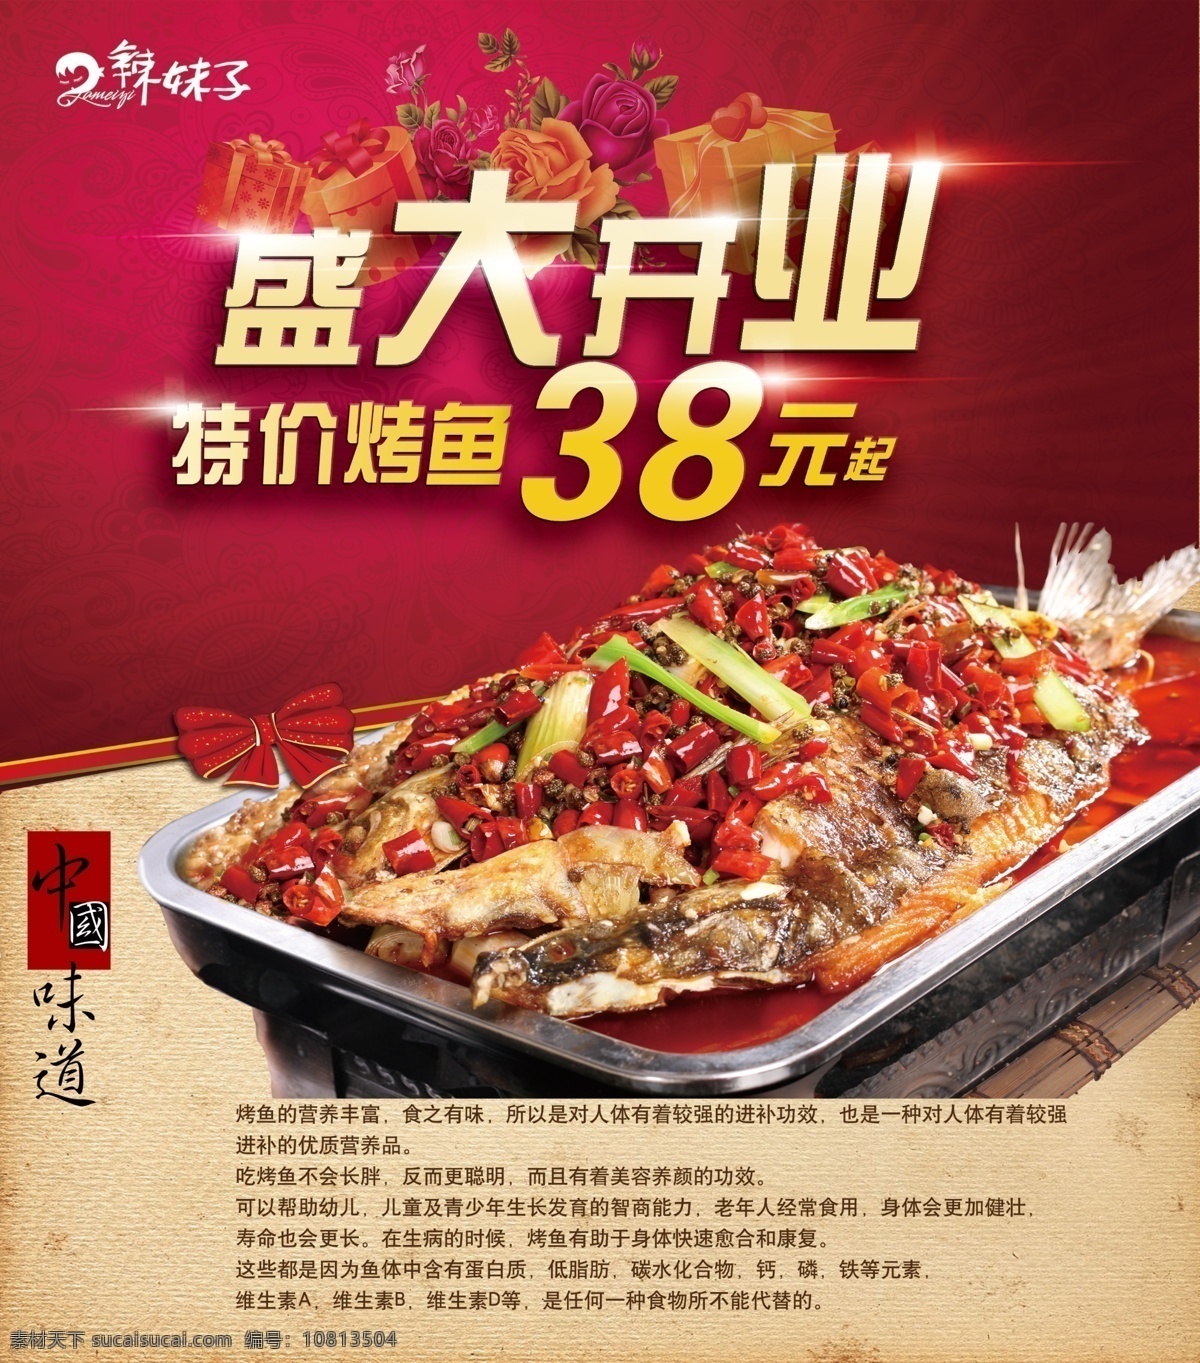 中国味道 烤鱼海报 中国味道烤鱼 烤鱼开业 烤鱼宣传 烤鱼广告 共享线下海报